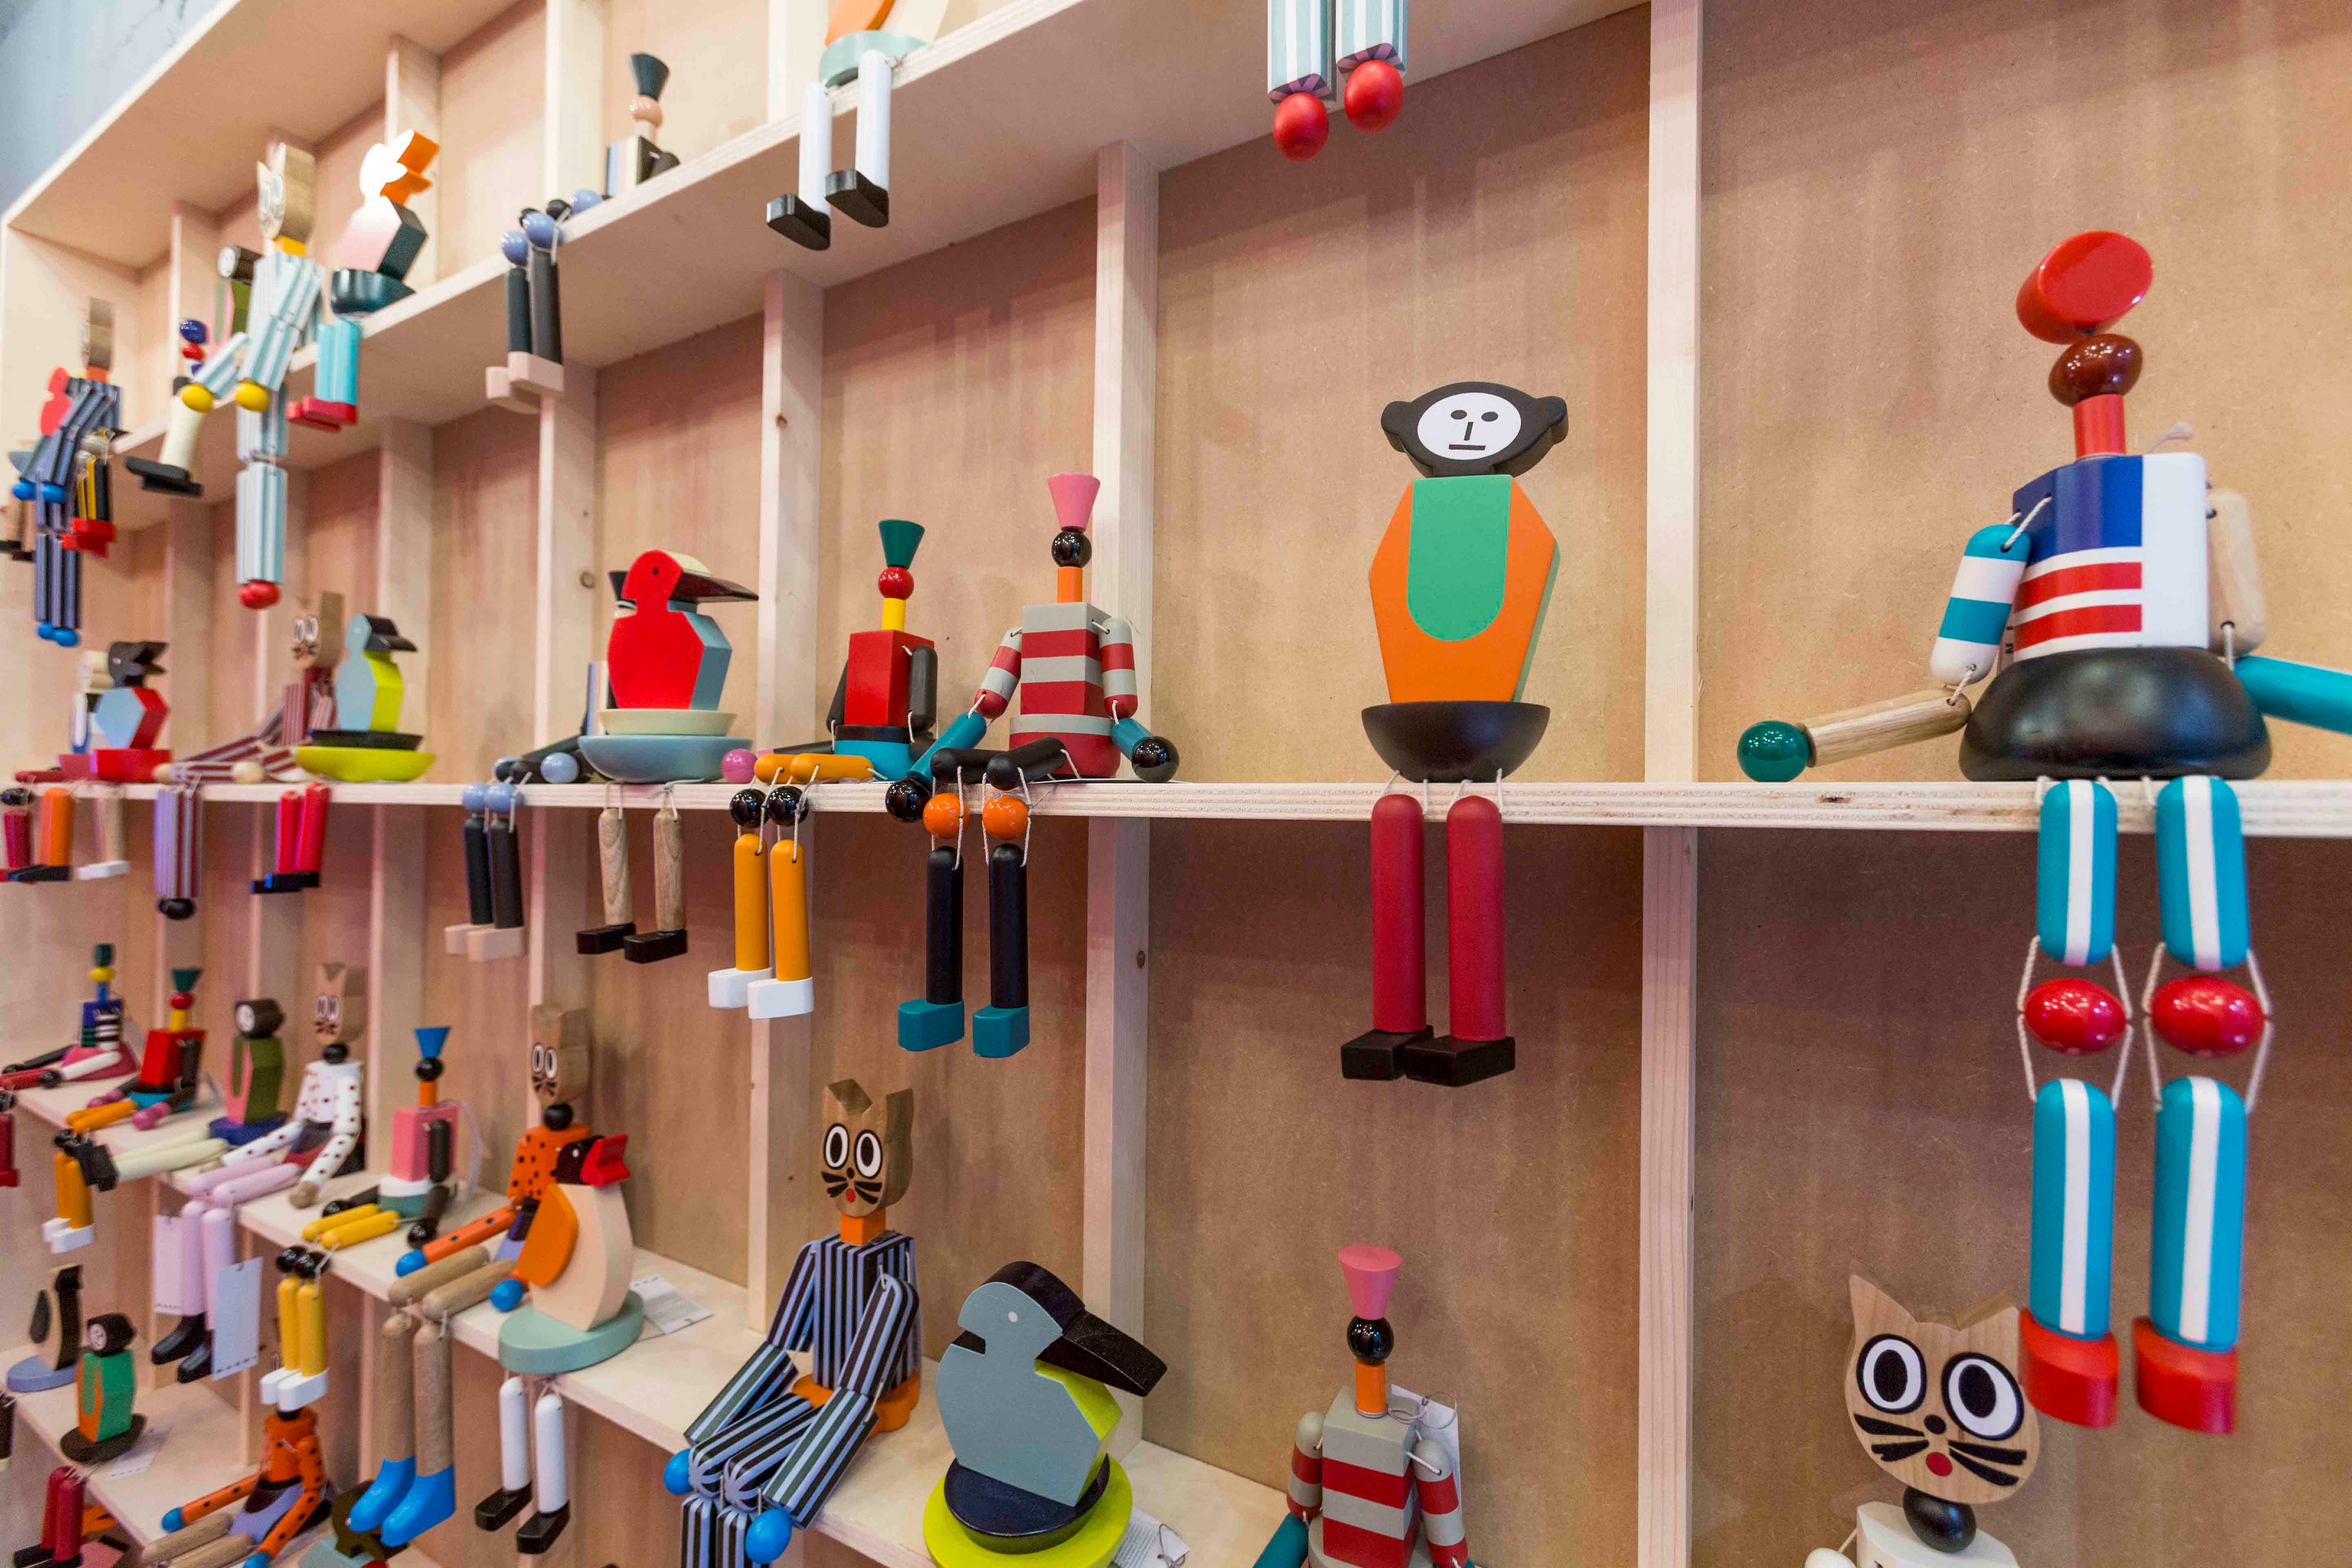 Le Marni Market révèle une collection d’objets originaux et hauts en couleur à Paris